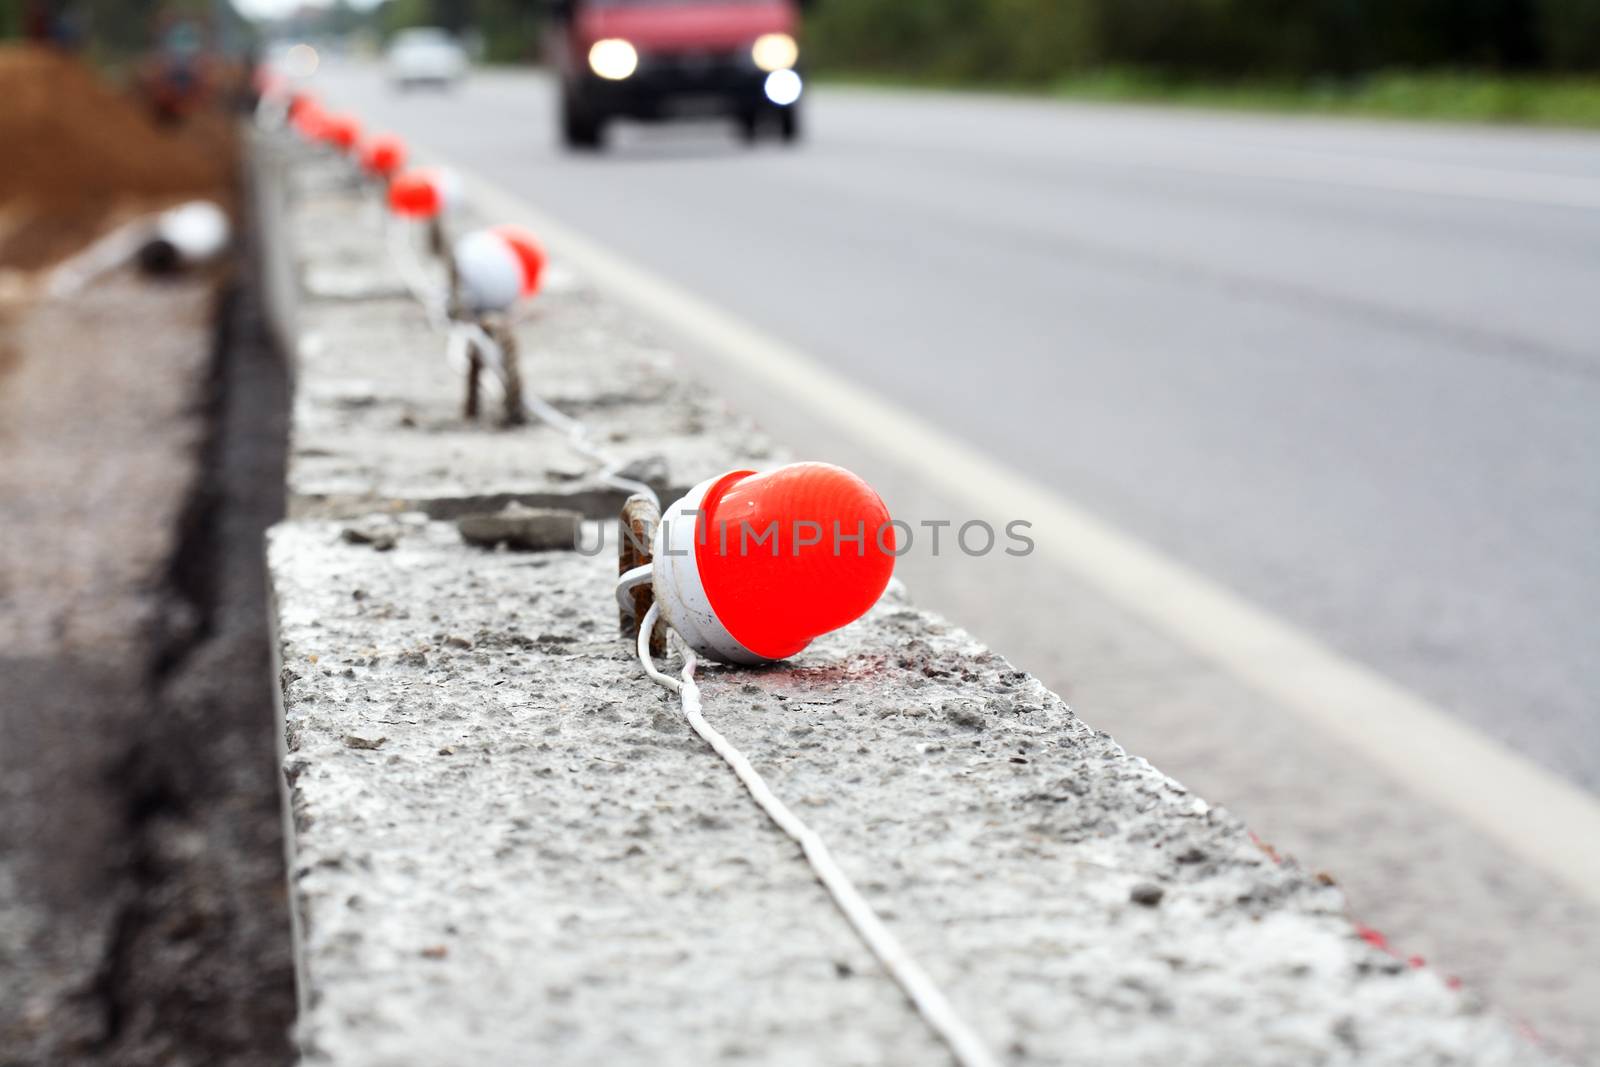 Repair Of Roads by kvkirillov